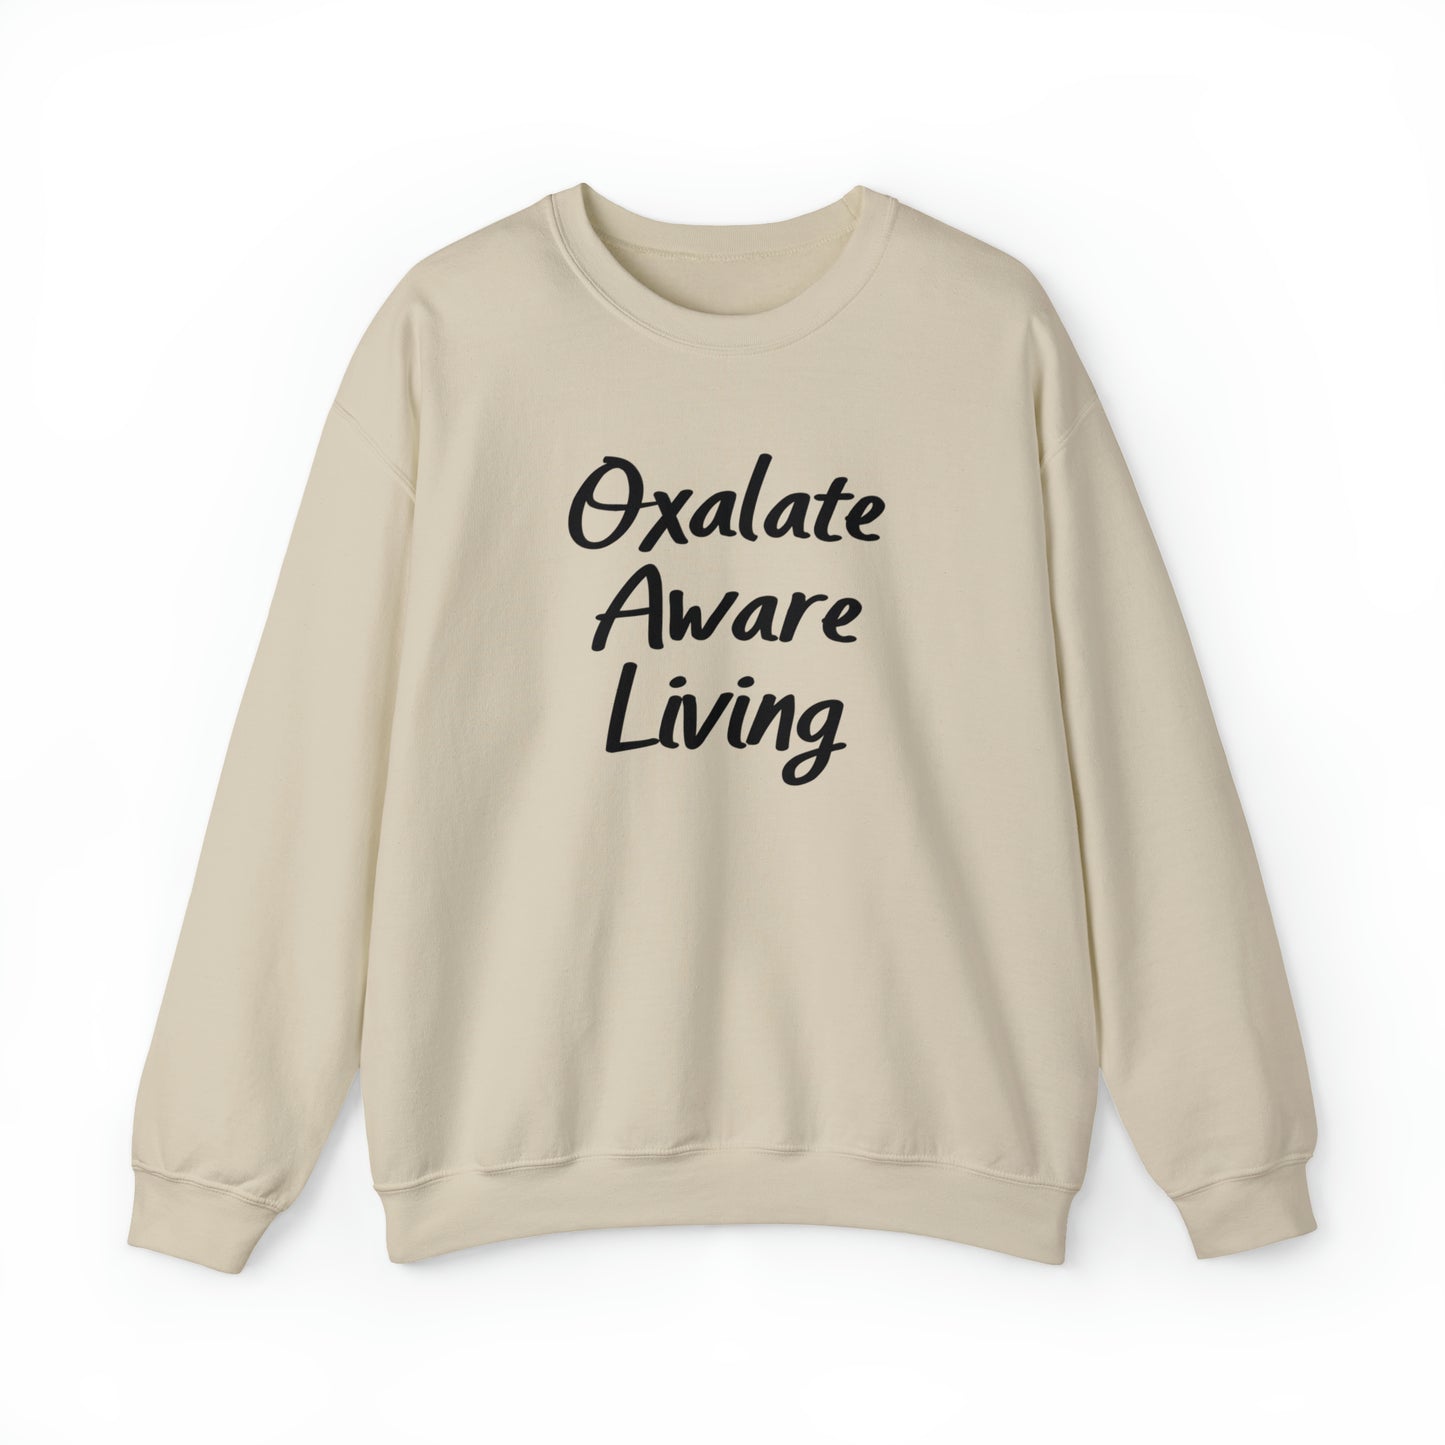 Sweatshirt with Oxalate Aware Living Word Art